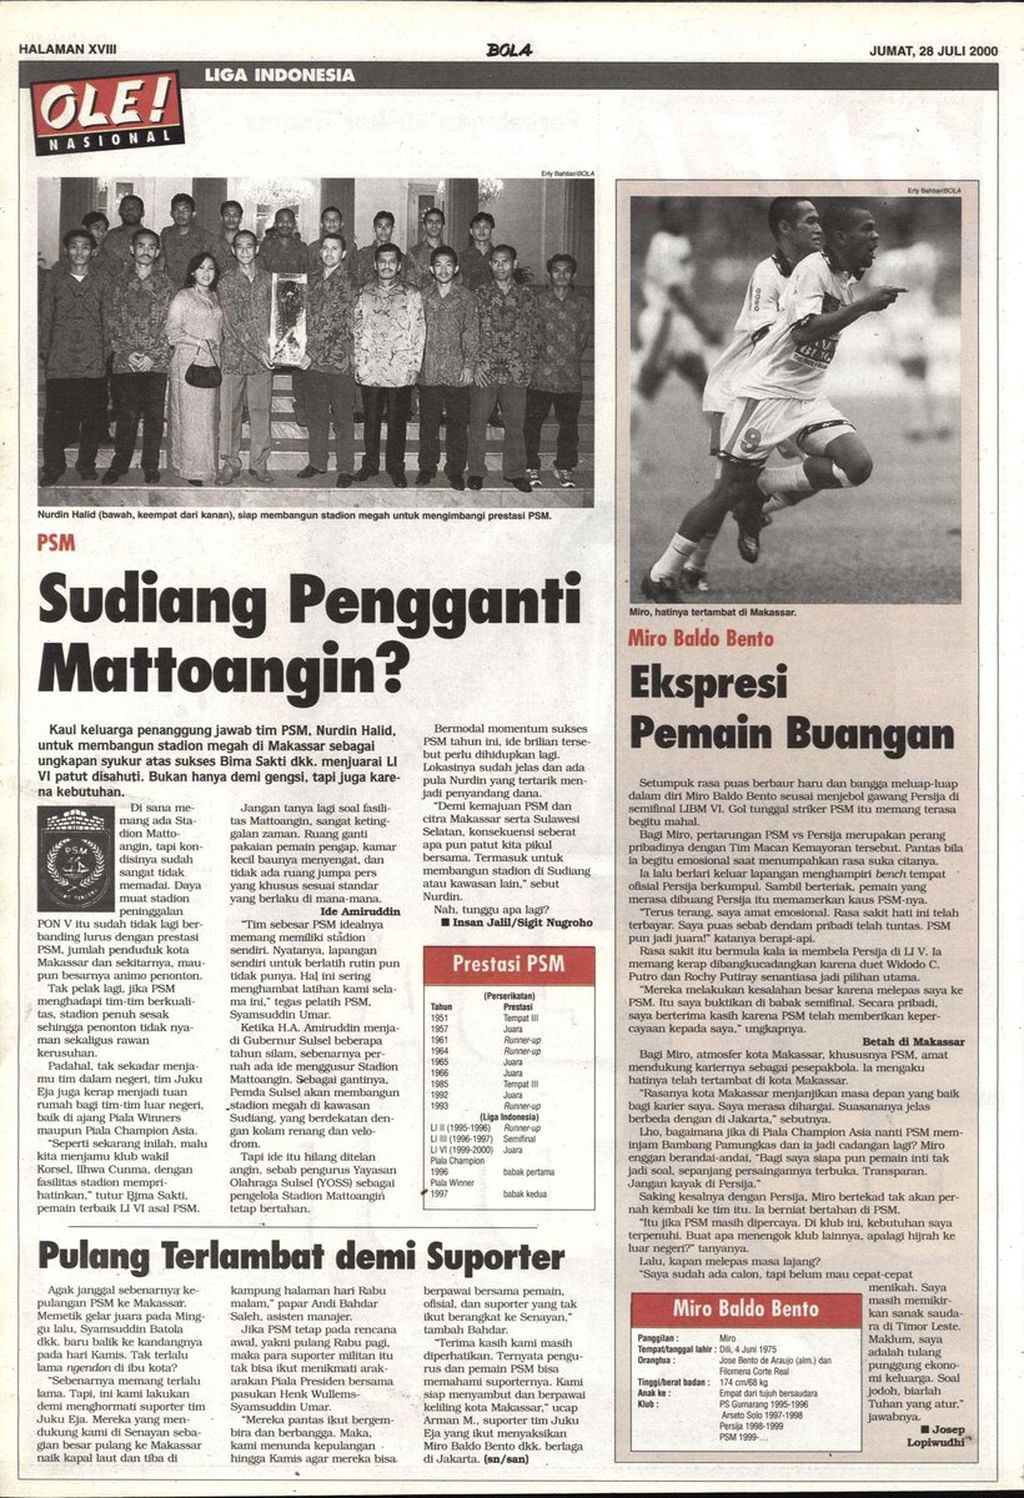 Halaman 18 Tabloid Bola edisi Jumat, 28 Juli 2000, yang mengulas rencana PSM Makassar membangun stadion baru setelah menjadi juara Liga Bank Mandiri 1999-2000.